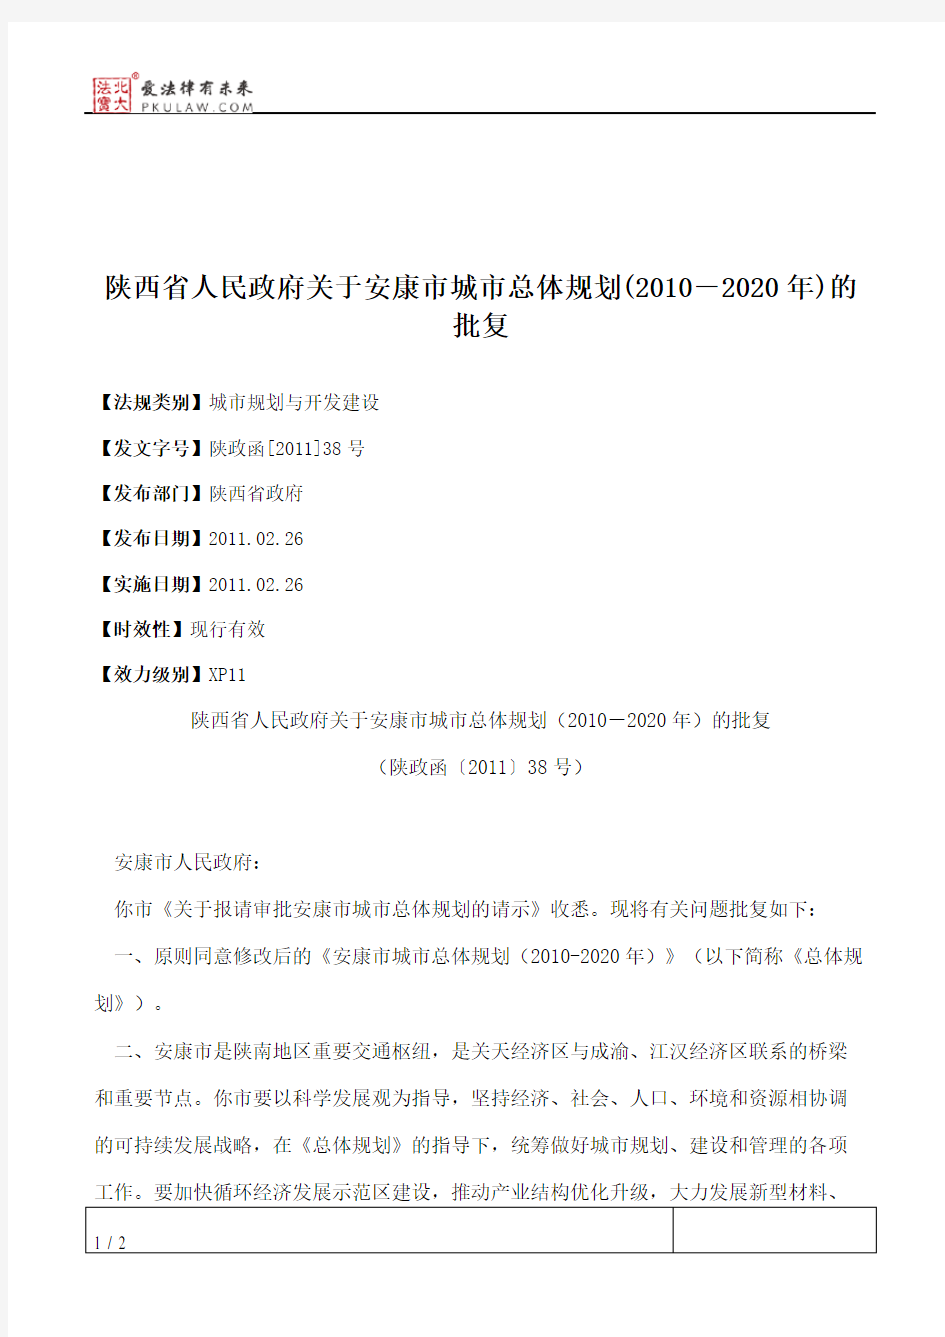 陕西省人民政府关于安康市城市总体规划(2010-2020年)的批复